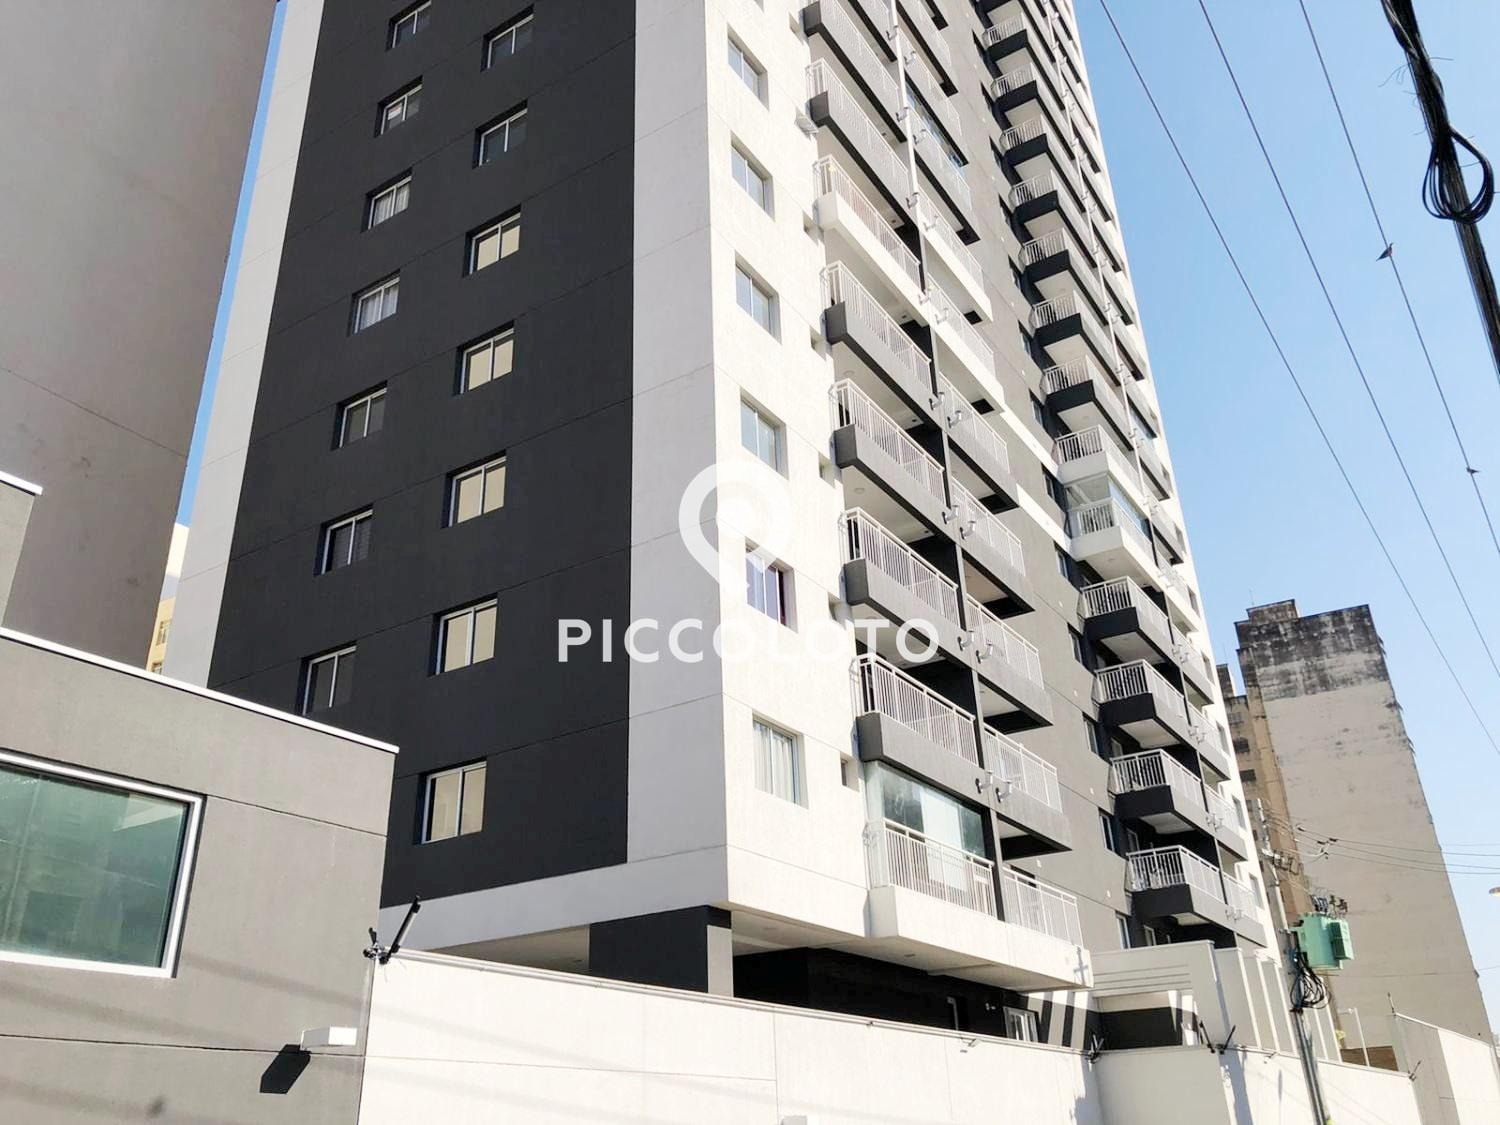 Piccoloto - Apartamento à venda no Centro em Campinas